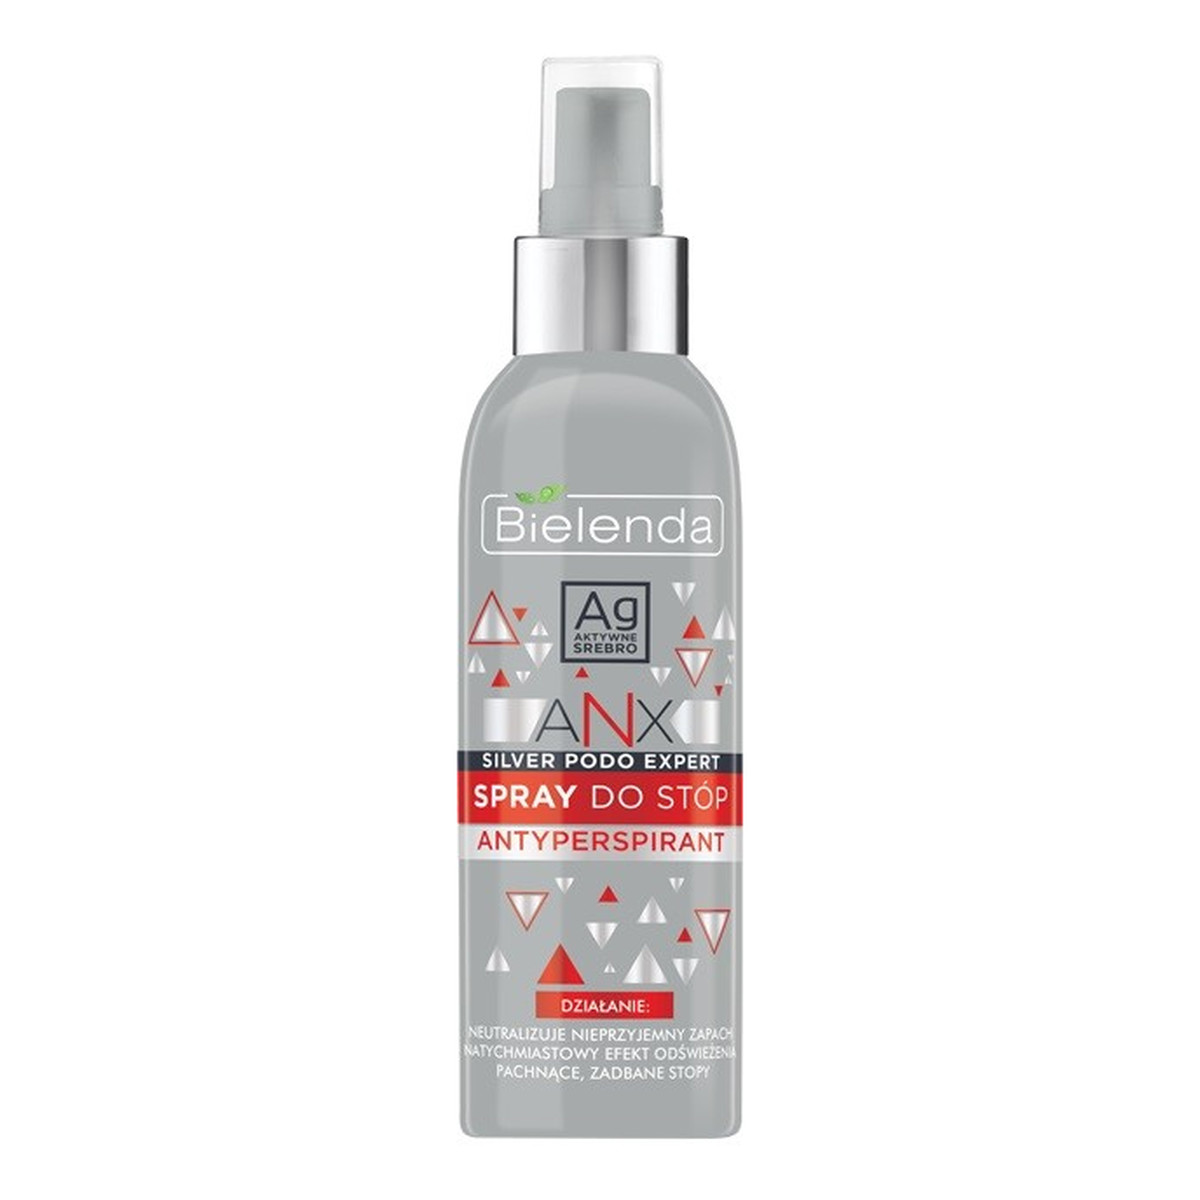 Bielenda ANX Silver Podo Expert Spray antyperspirant do stóp 150ml